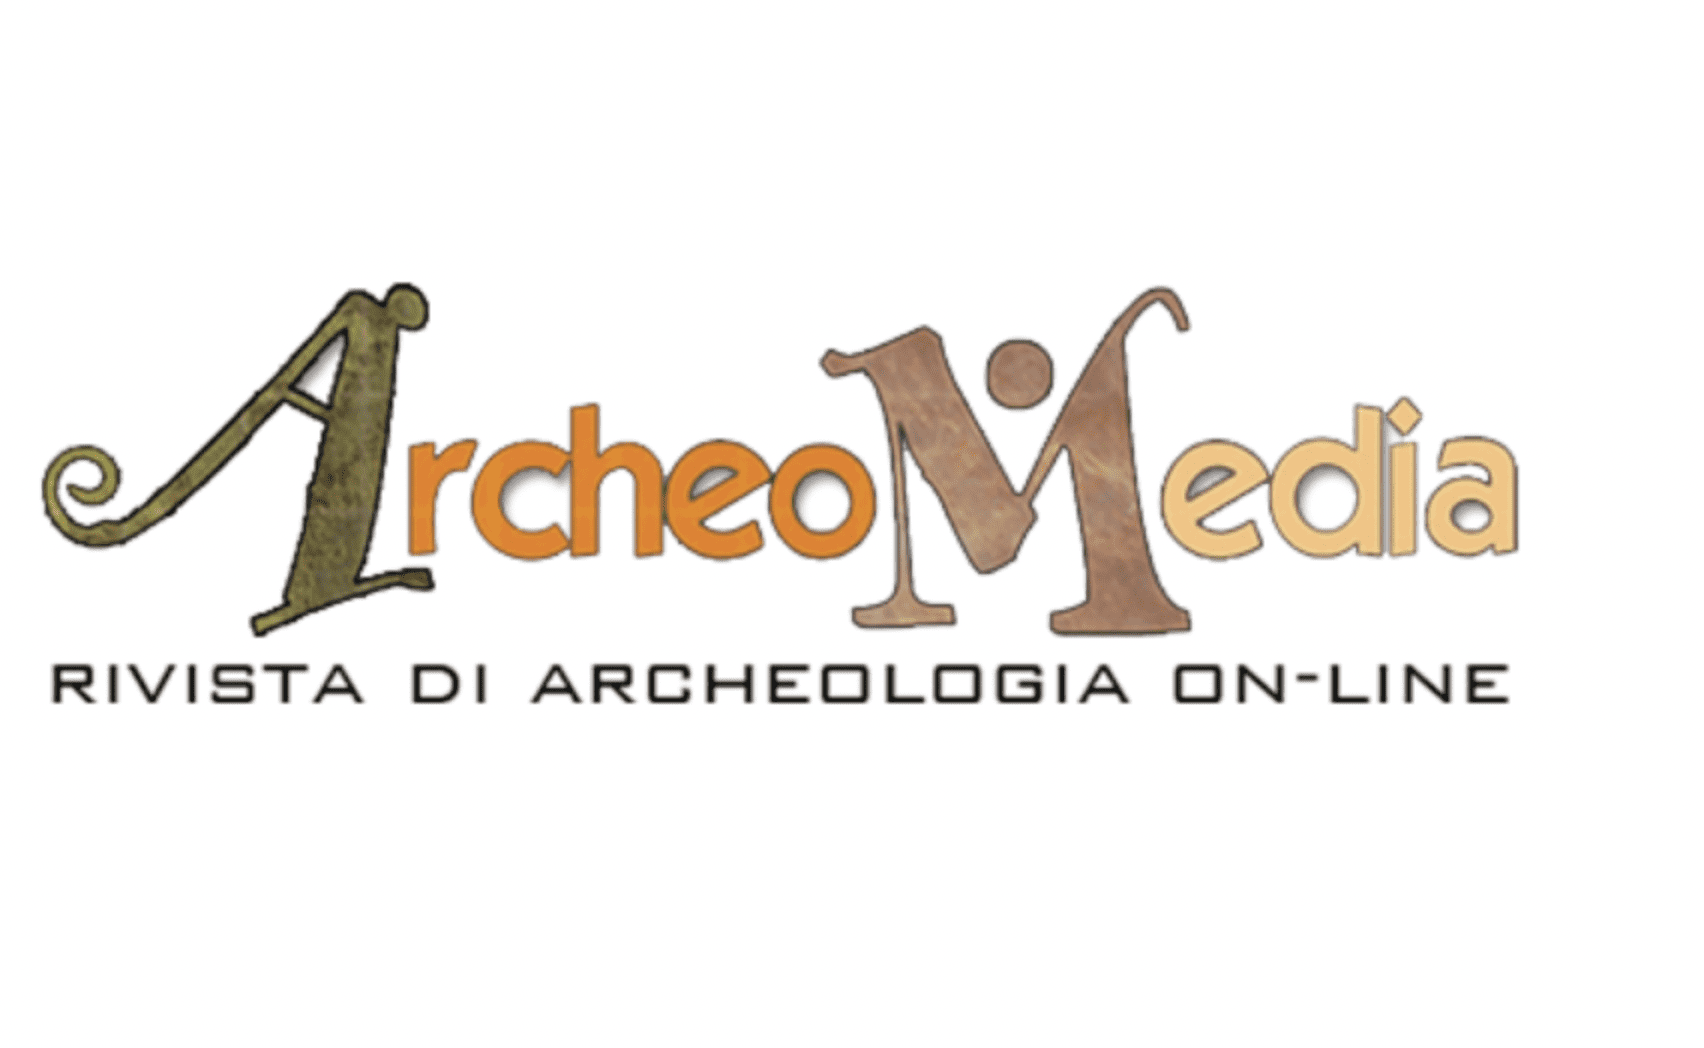 Una vasta gamma di siti archeologici in Italia. Scoprili con ArcheoMedia, rivista online giunta al 10° anno di pubblicazione.